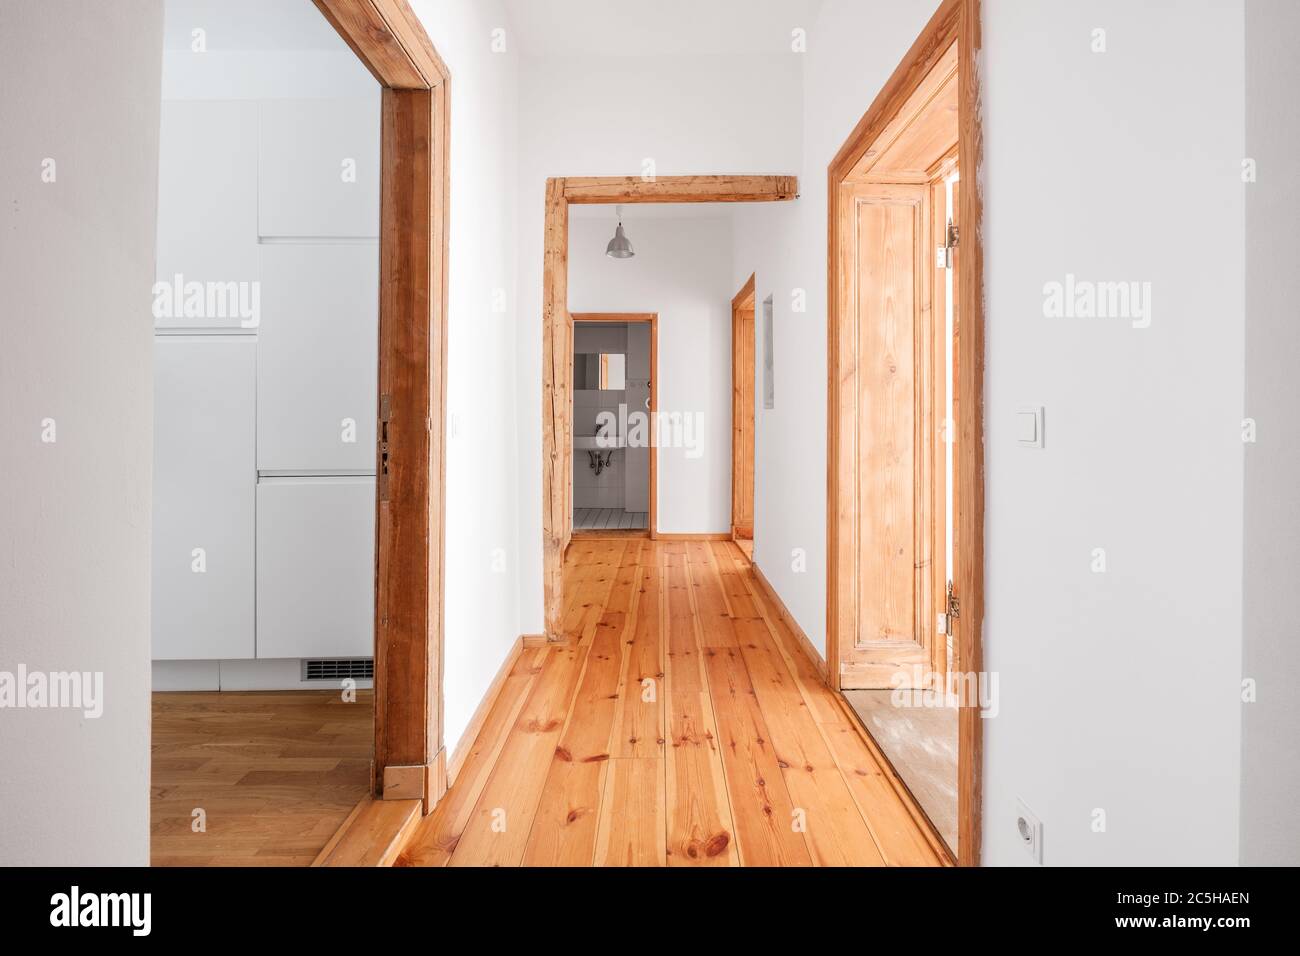 Flur in renovierter, leerer Wohnung mit Holzboden - Stockfoto